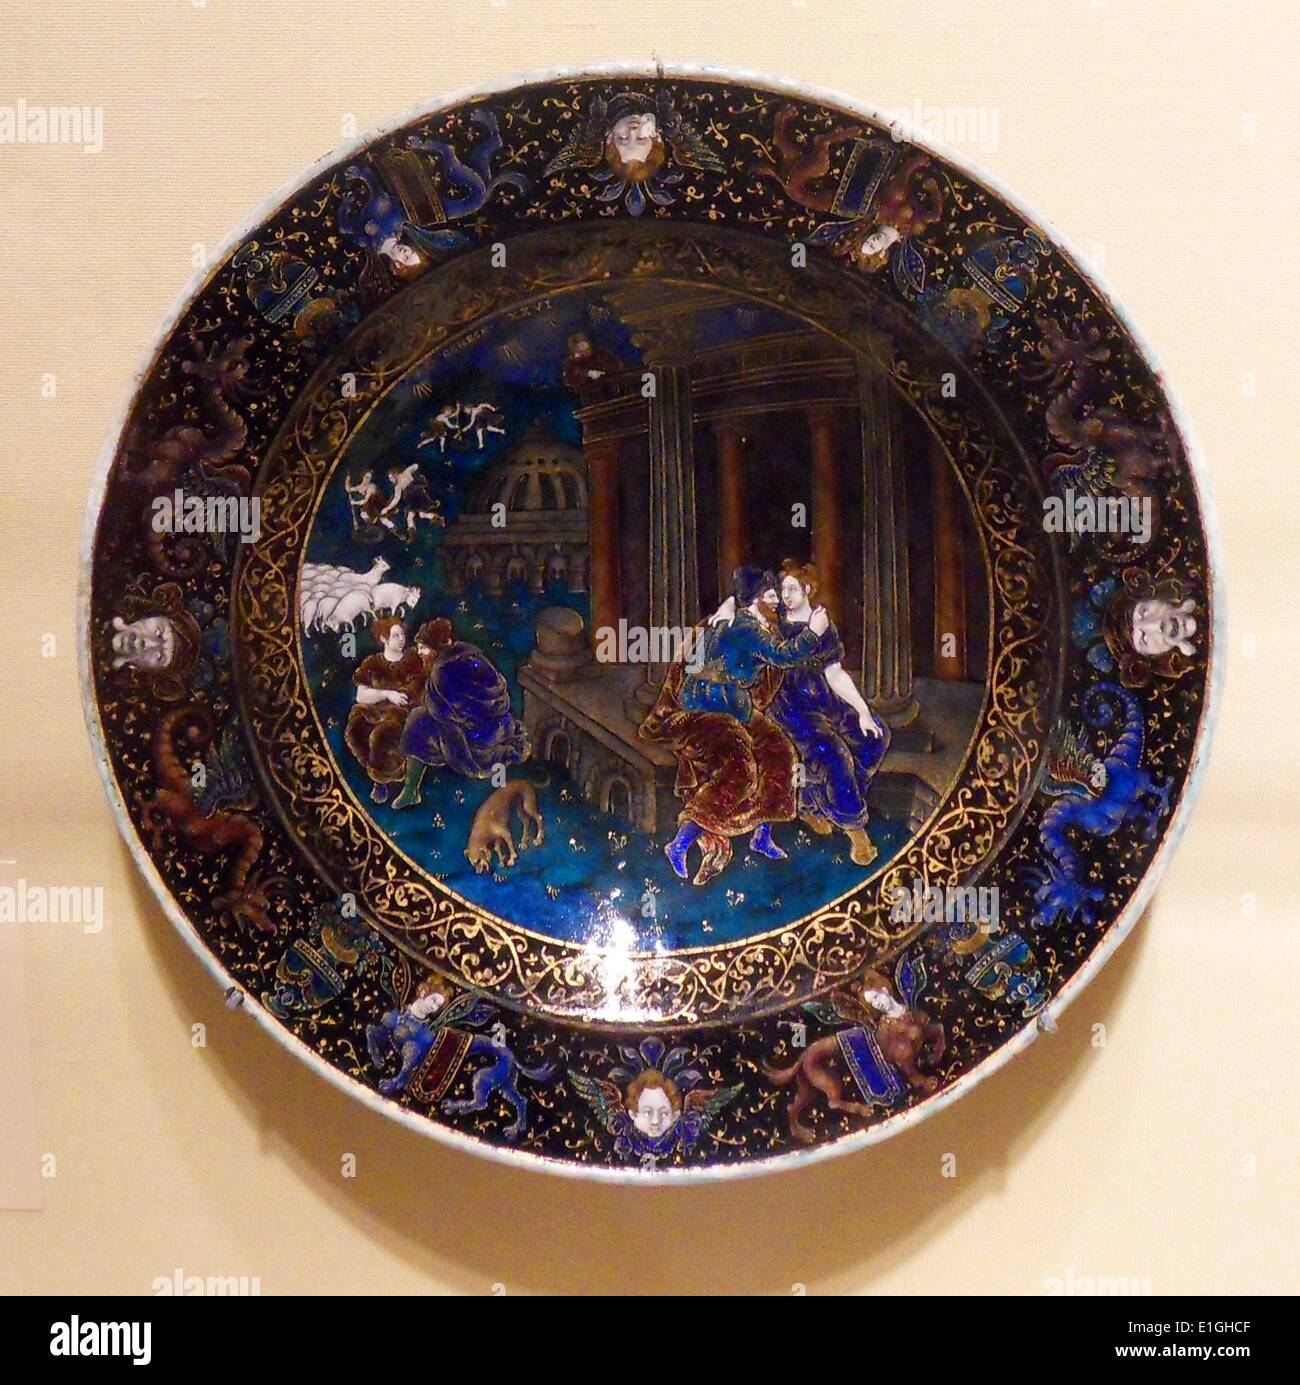 Assiette de Isaac et Rebecca, émail, en partie doré, sur le cuivre.  Composition basée sur une gravure de Charles-Etienne Delaune  (1518/19-1583). Signé SC (Suzanne Cour, ou de court, enregistré en 1600)  Limorges,fin